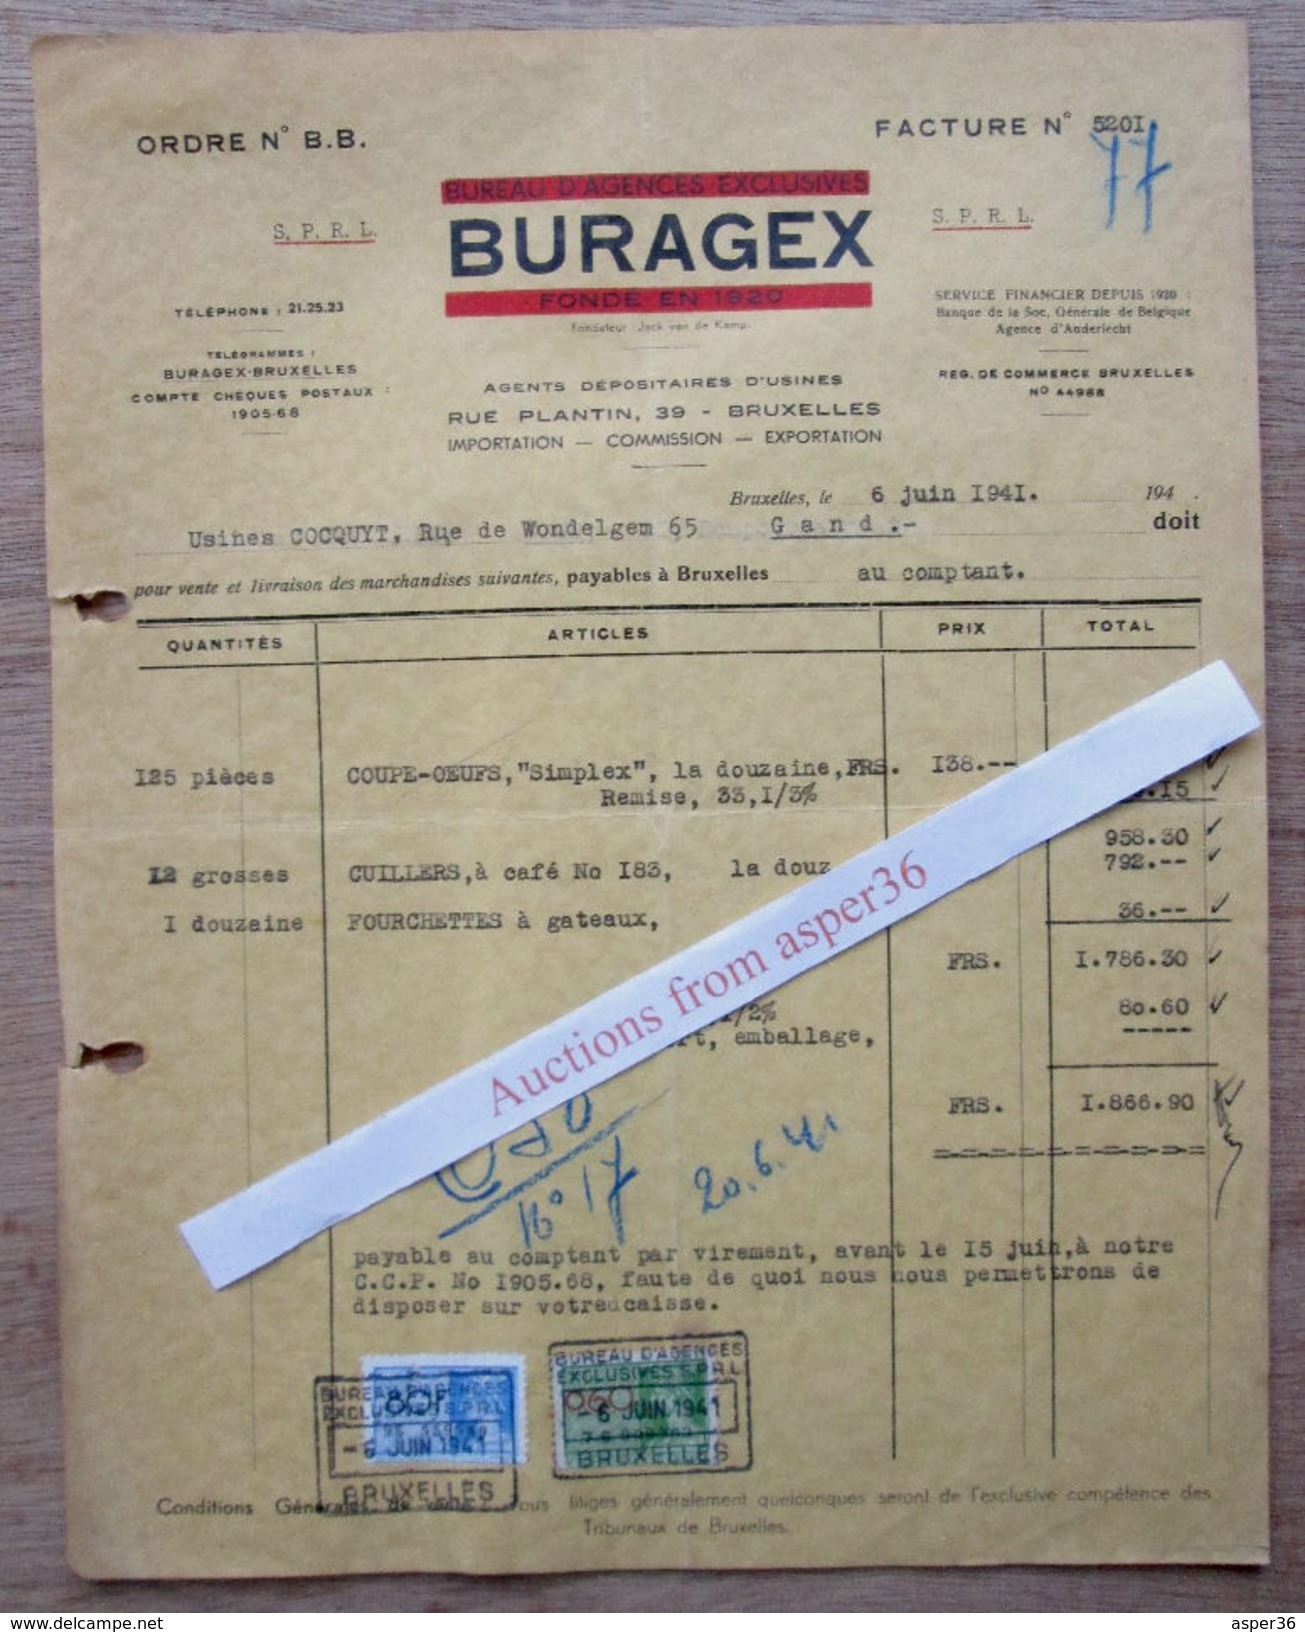 Buragex, Rue Plantin, Bruxelles 1941 - 1900 – 1949